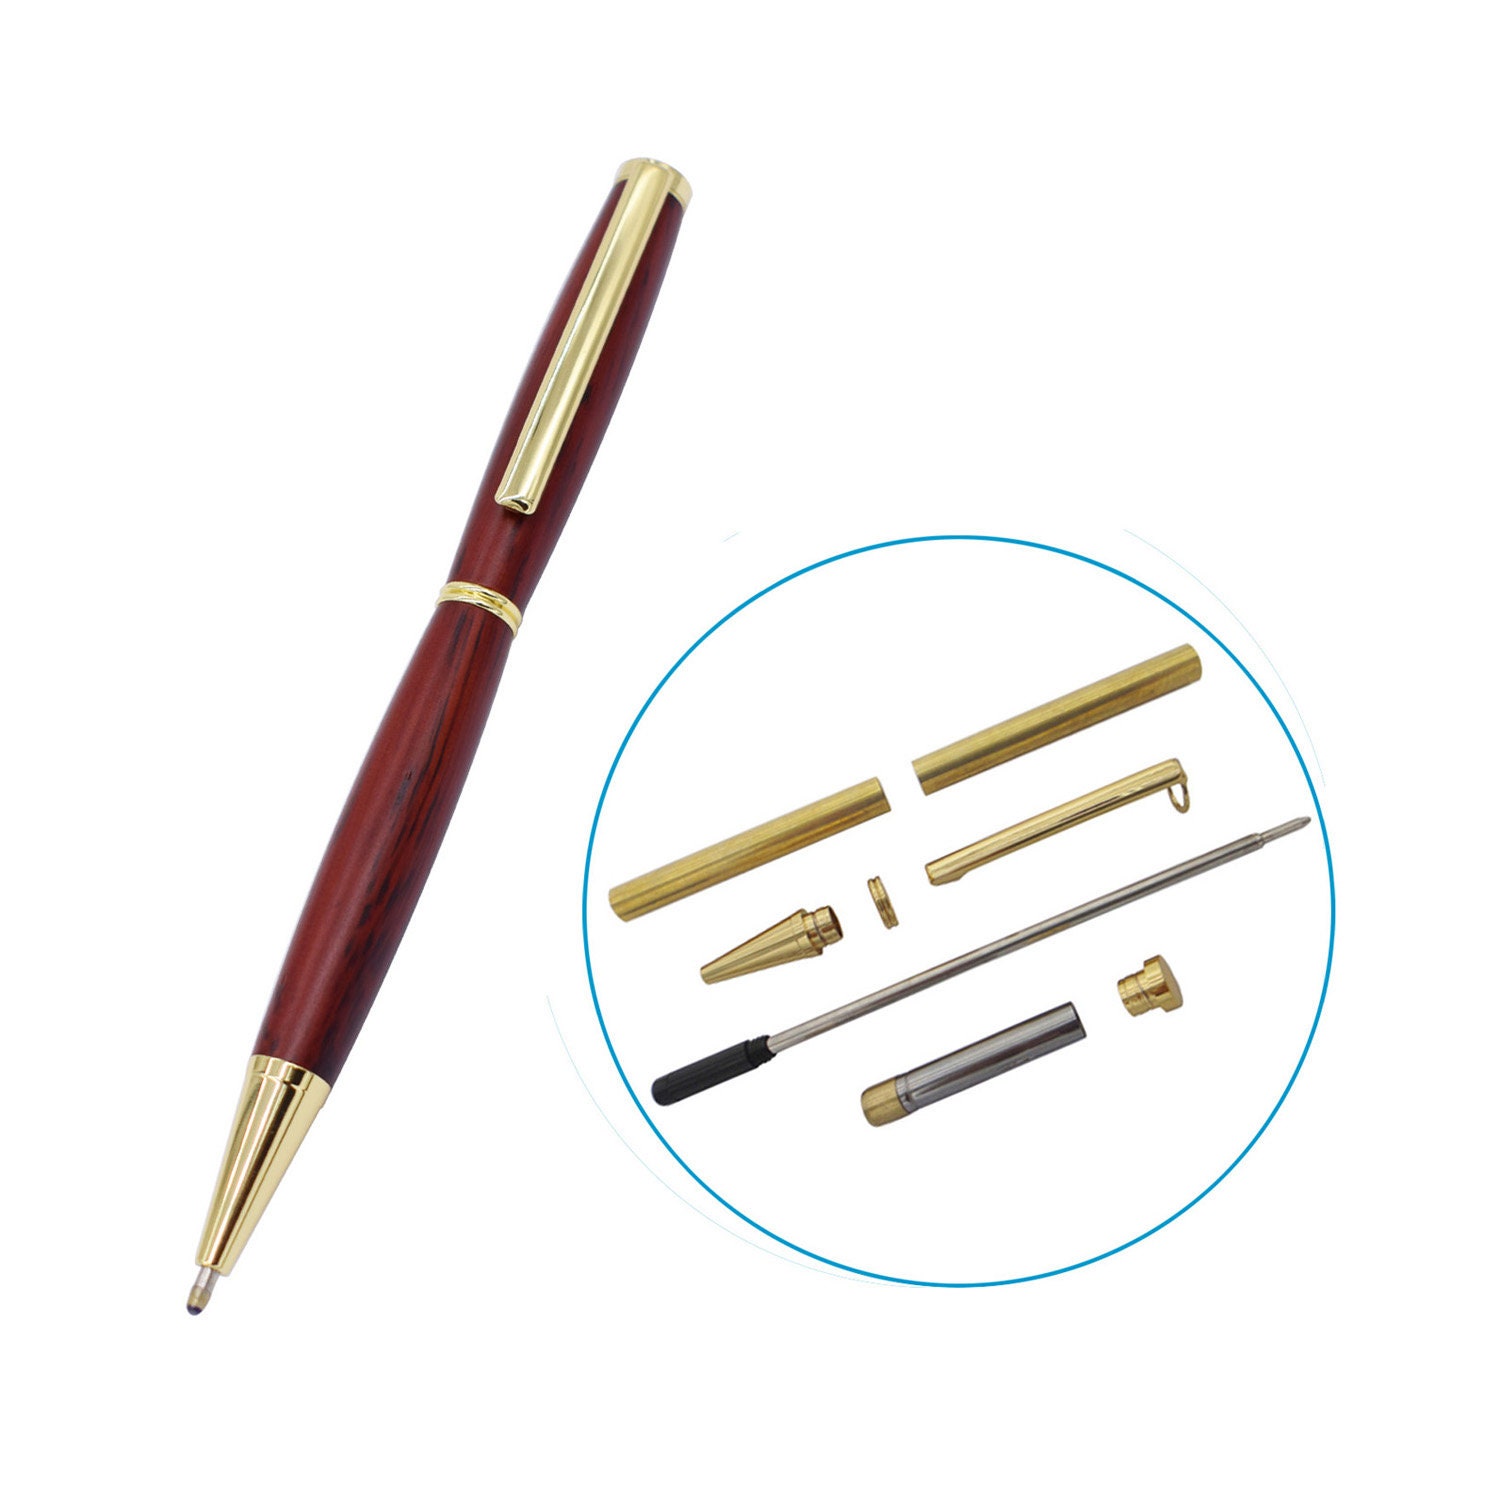 Excellence Pen Kits Woodturning Kits Pen Turning 7mm Slimline Pen Kits  BP589#